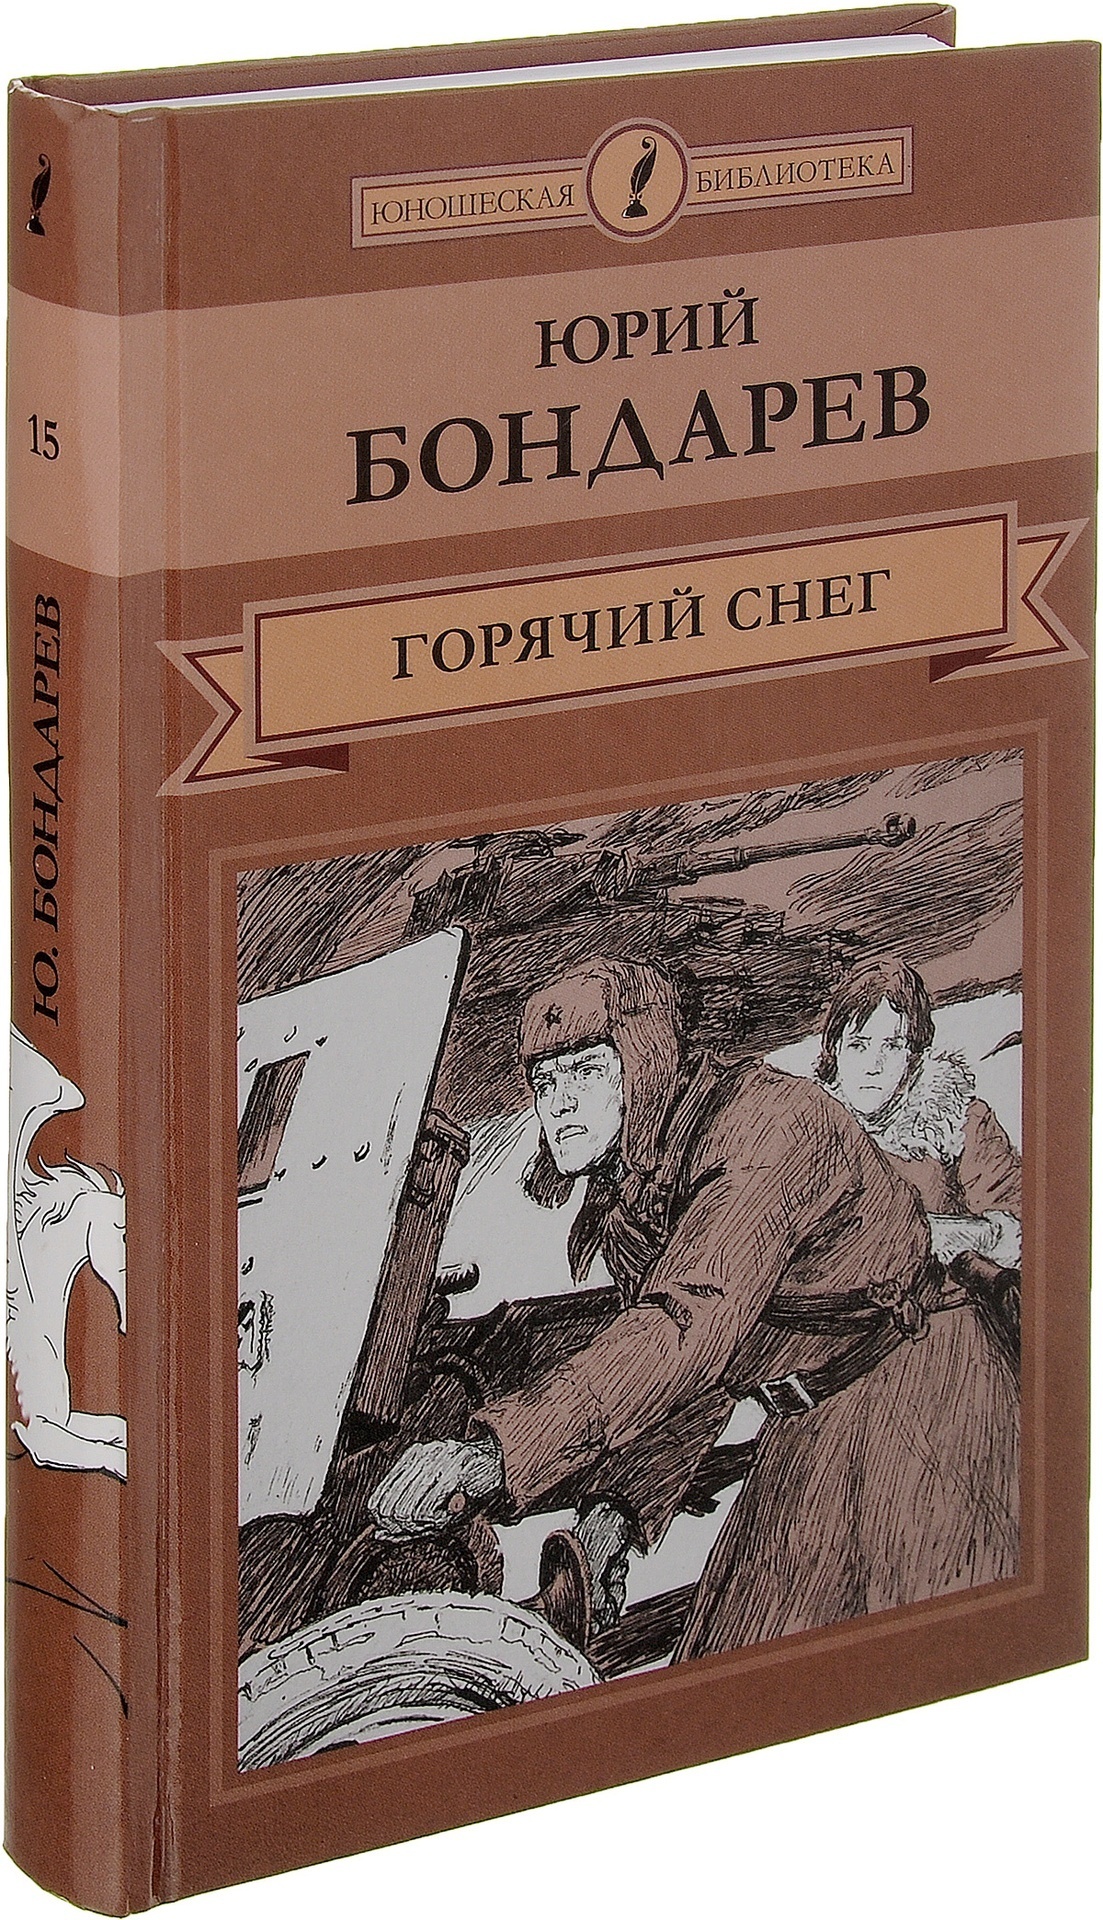 Горячий снег, роман Юрия Бондарева 